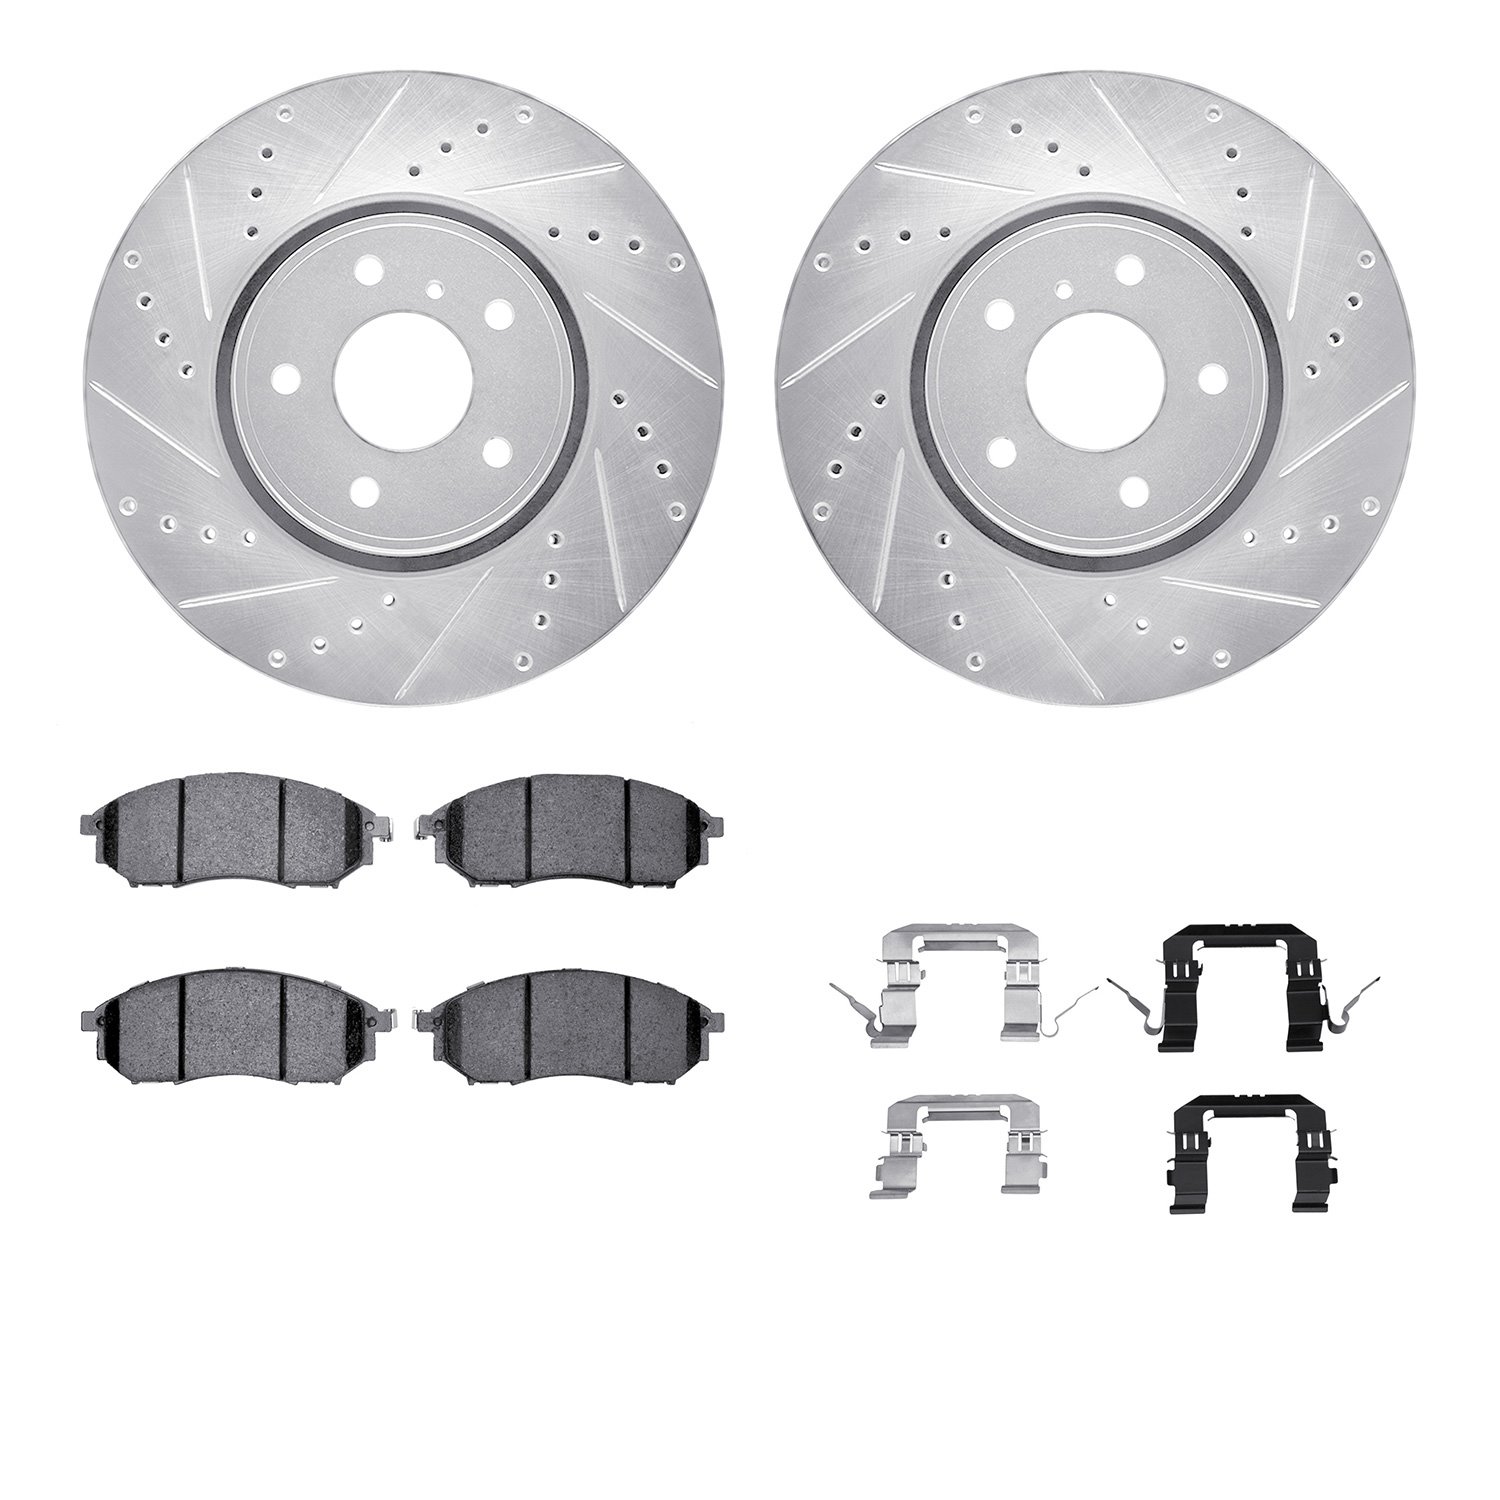 7612-68005 Drilled/Slotted Brake Rotors w/5000 Euro Ceramic Brake Pads Kit & Hardware [Silver], 2005-2014 Infiniti/Nissan, Posit